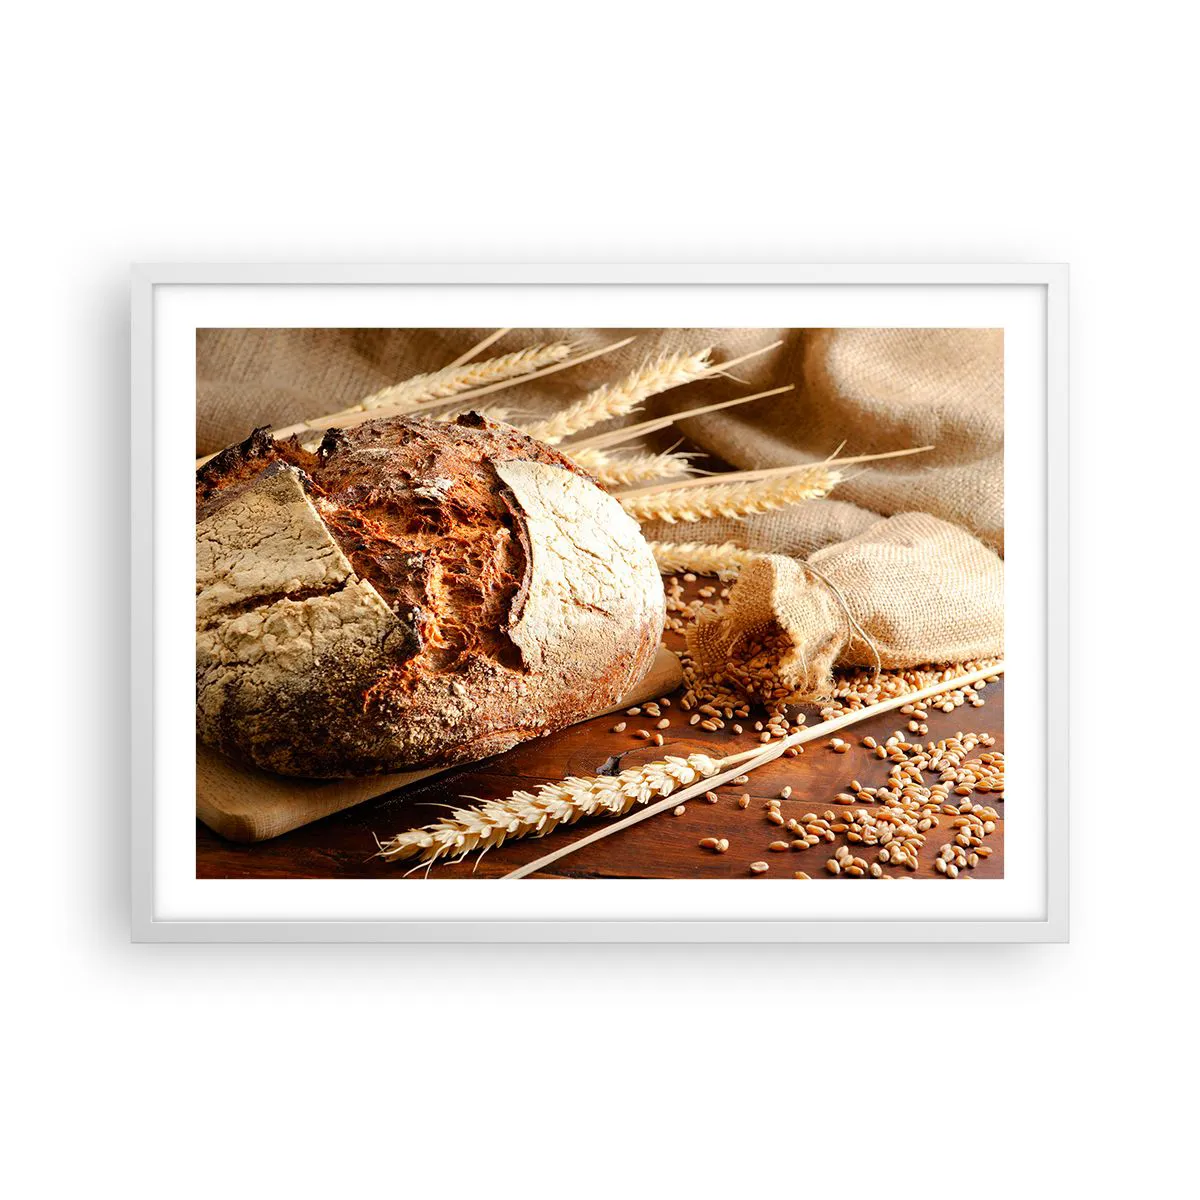 Poster in einem weißen Rahmen Arttor 70x50 cm - Appetitanregend, duftend, knackig - Brot, Weizenkörner, Gastronomie, Müsli, Brot, Ins Wohnzimmer, Für Schlafzimmer, Braun, Weiß, Horizontal, P2WAA70x50-2246